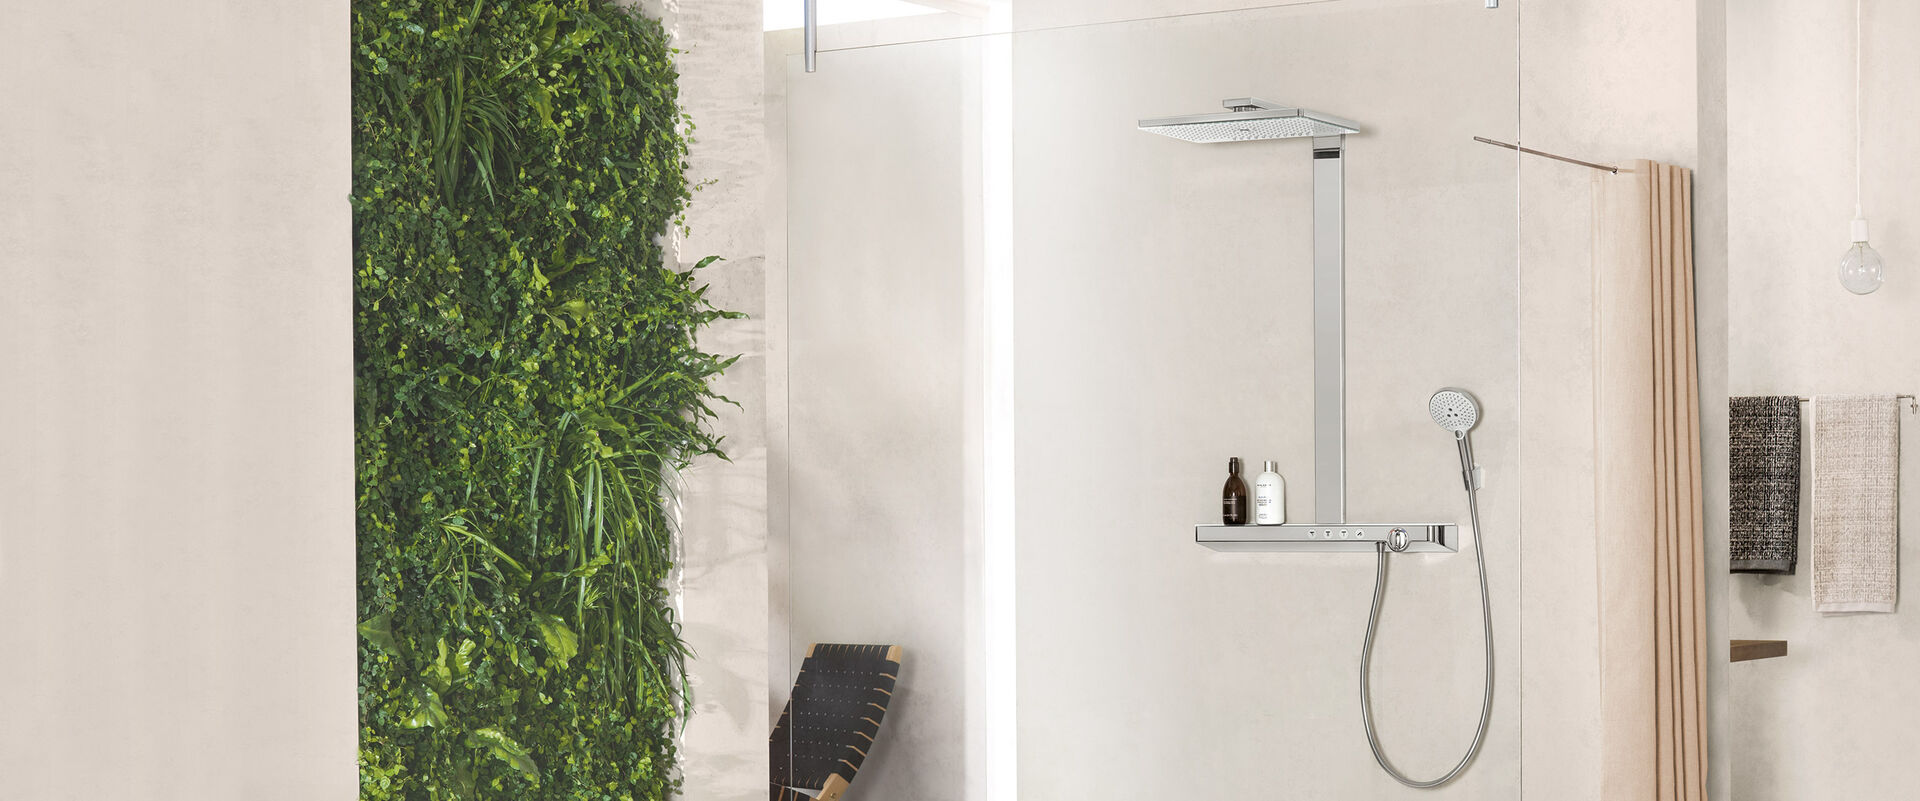 Helles Badezimmer, in dessen Dusche eine hansgrohe rainmaker select Kopfbrause installiert ist. Im Hintergrund hängen Handtücher. Links an der Wand wachsen grüne Pflanzen.